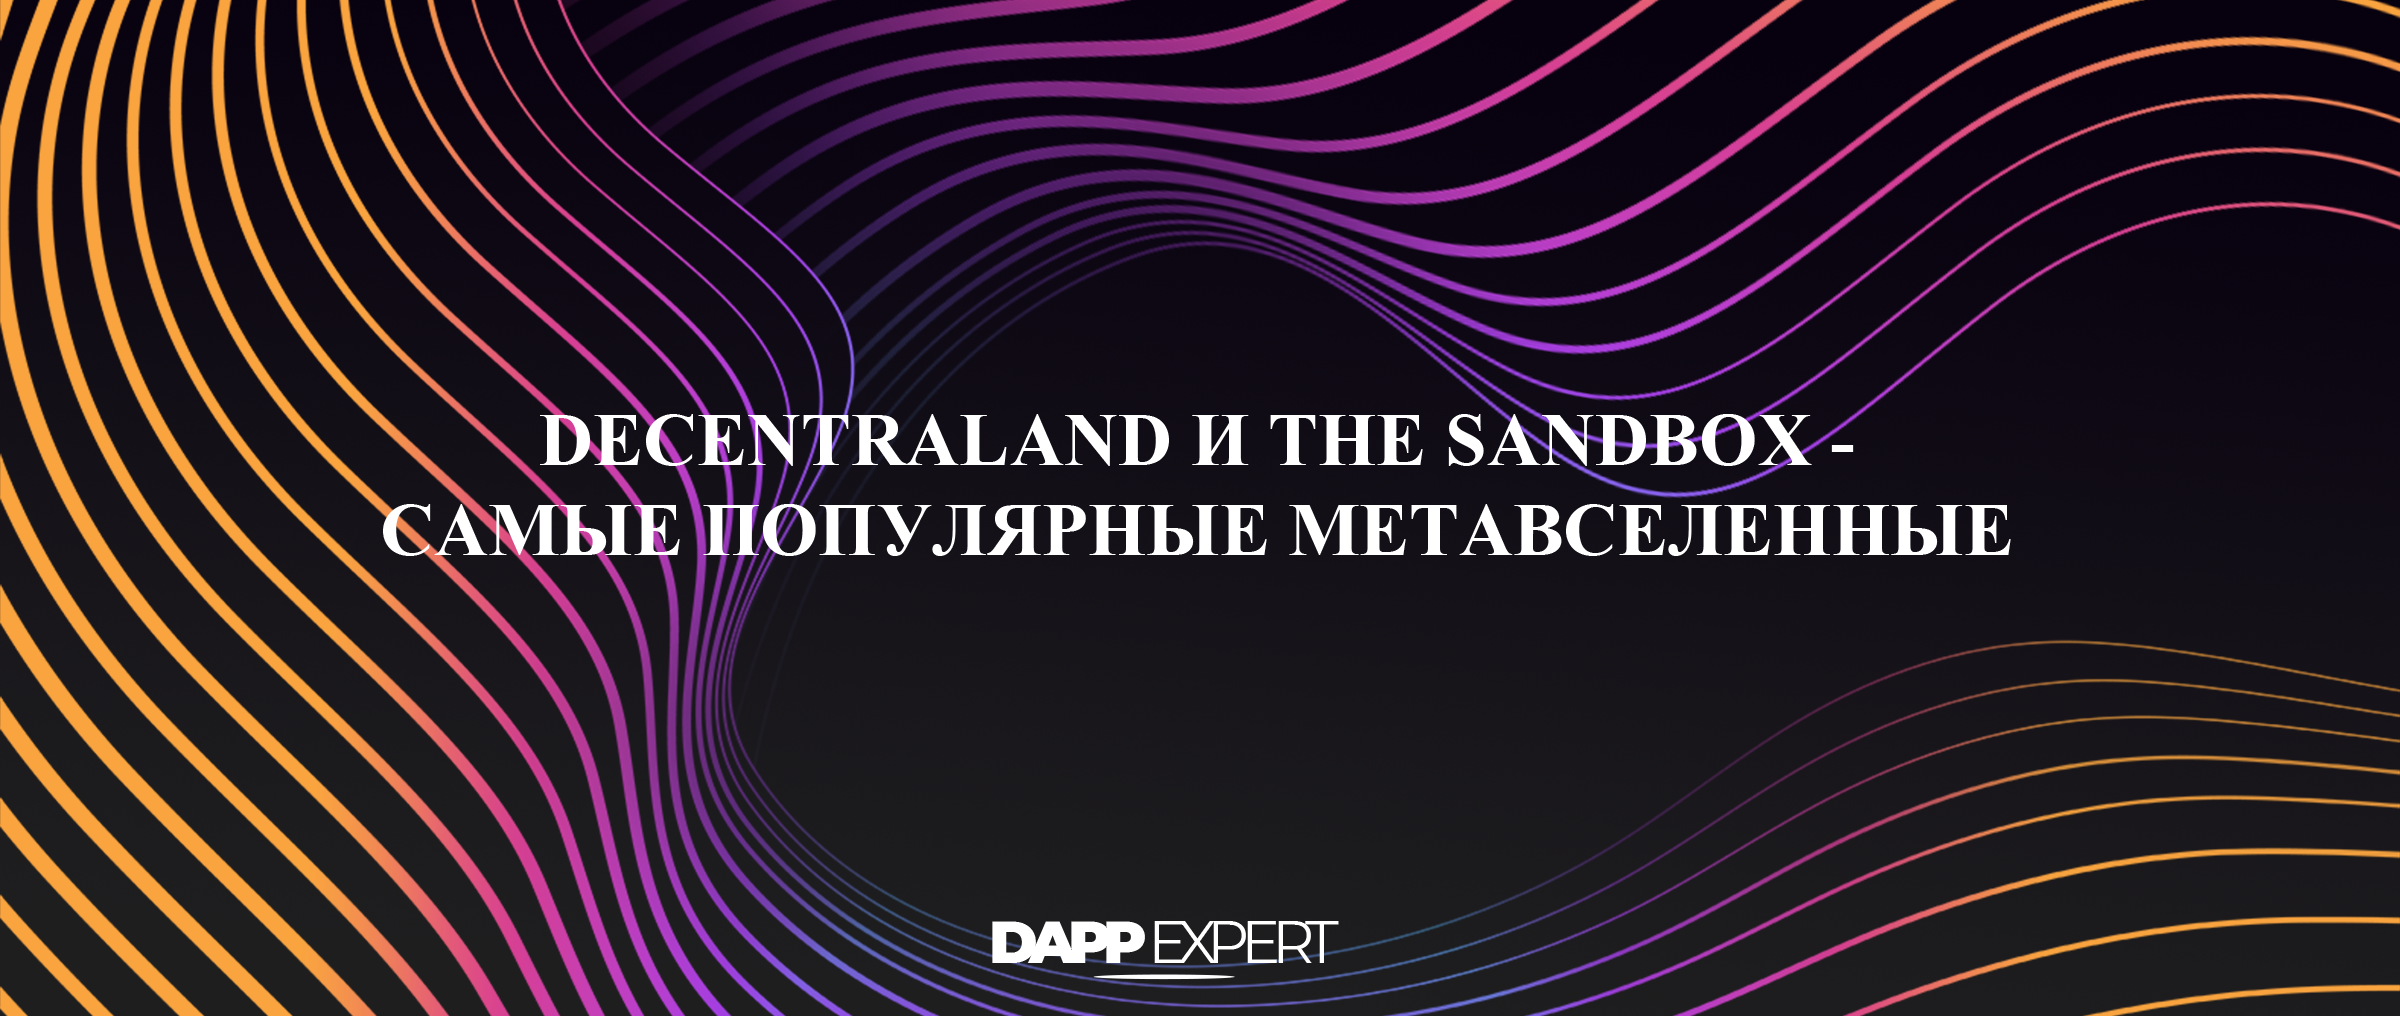 Decentraland и The Sandbox - метавселенные